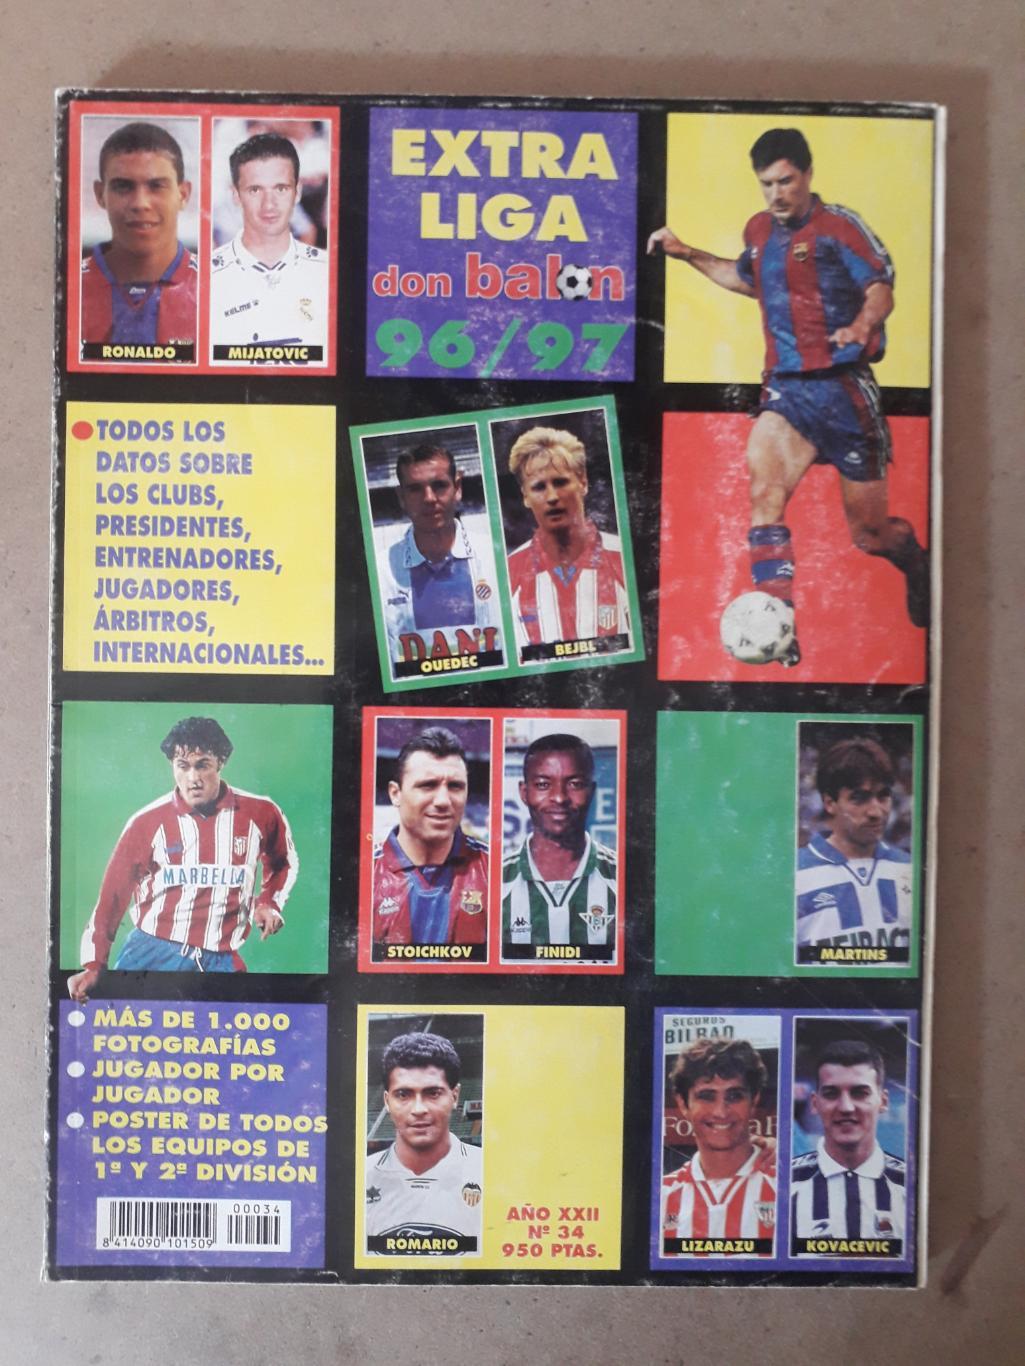 Don Balon extra liga 1996/97